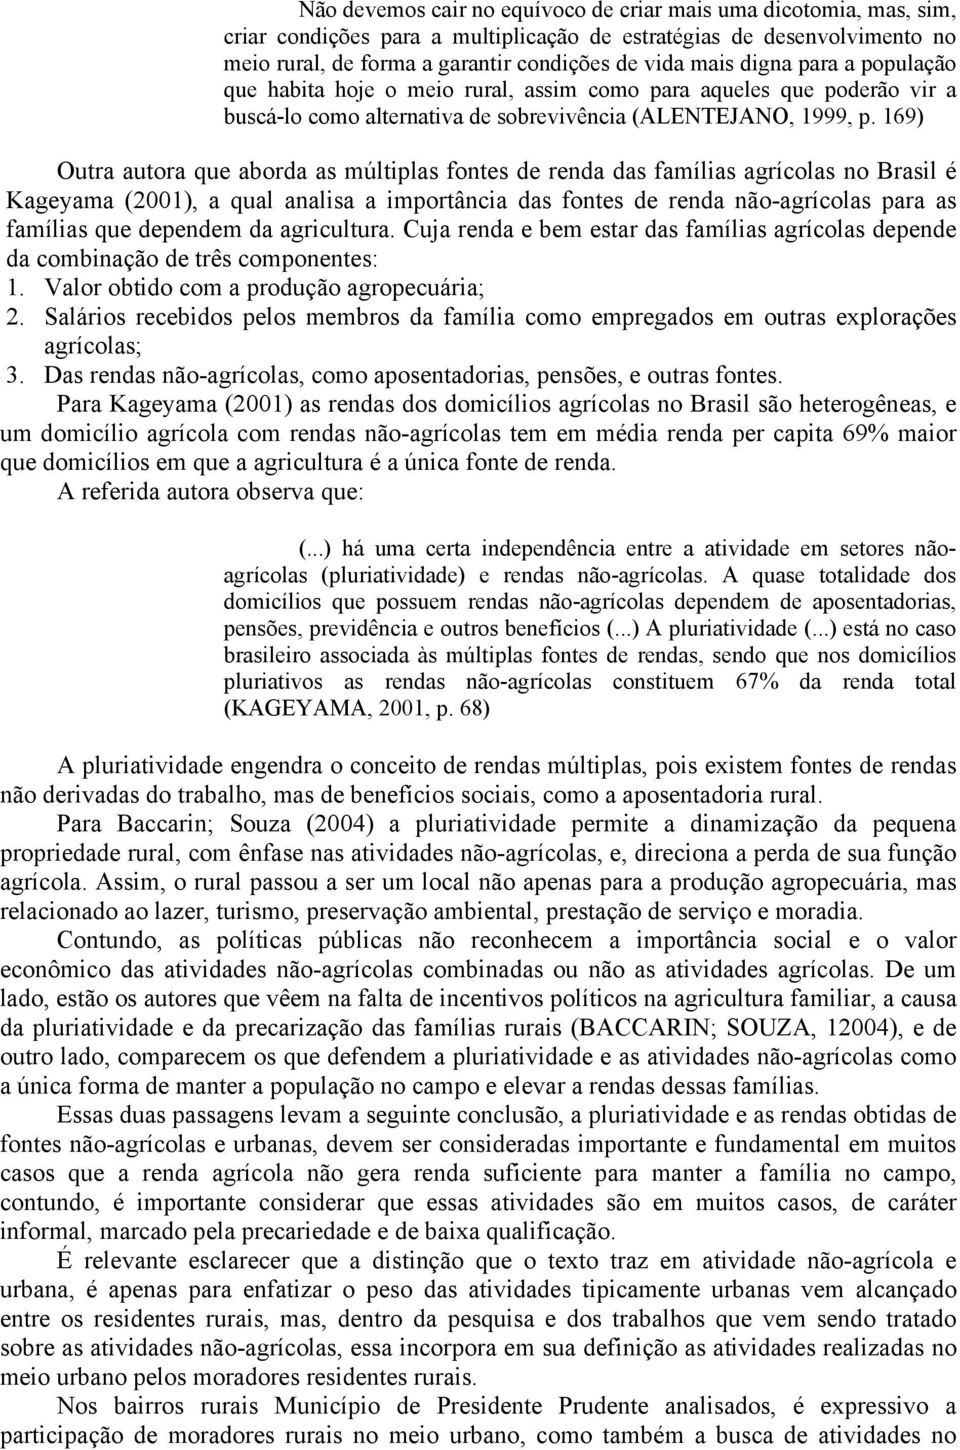 169) Outra autora que aborda as múltiplas fontes de renda das famílias agrícolas no Brasil é Kageyama (2001), a qual analisa a importância das fontes de renda não-agrícolas para as famílias que